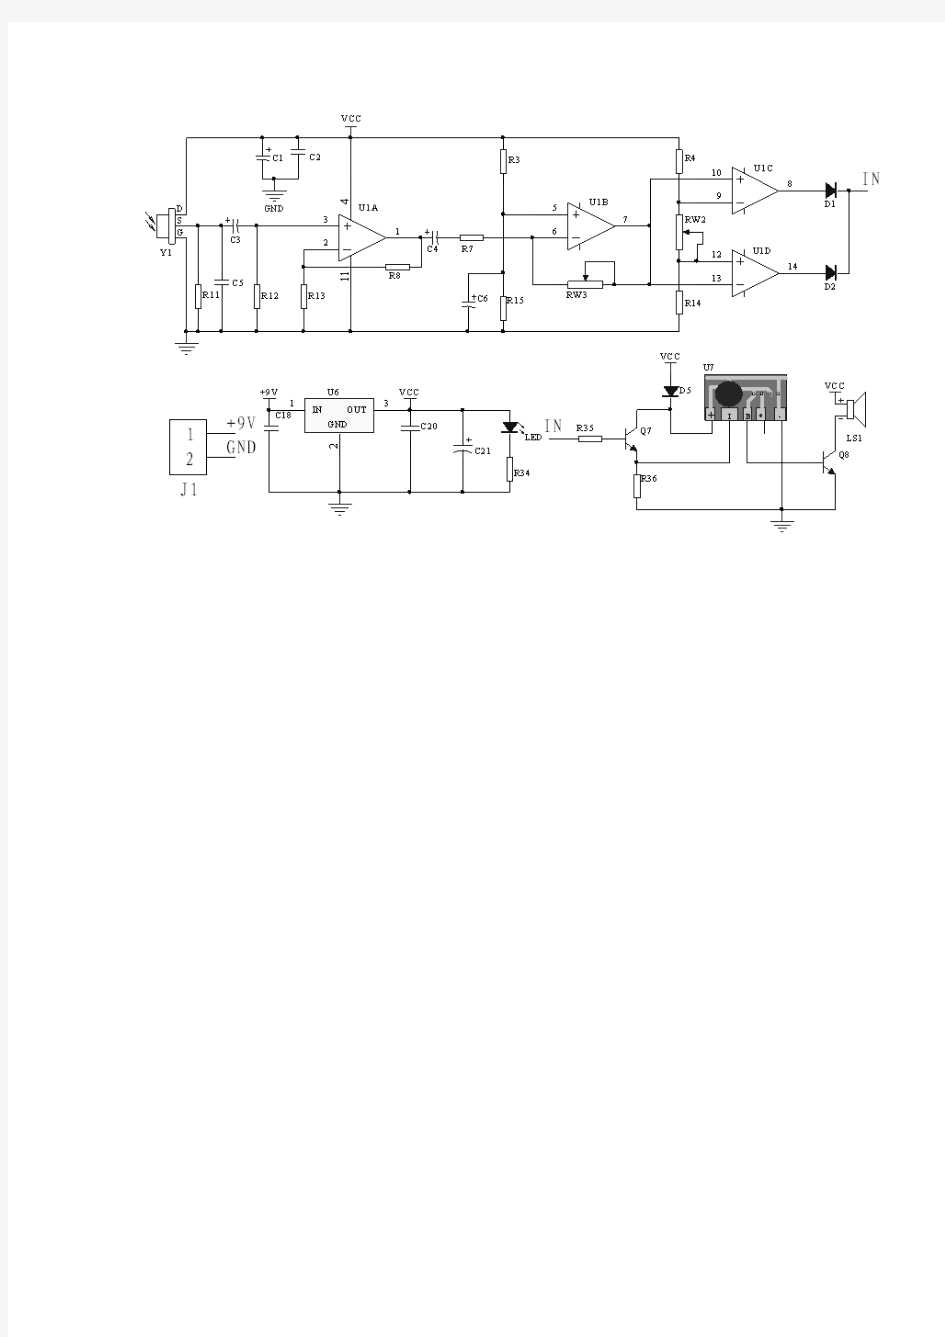 使用ProtelDXP2004软件绘制电路原理图和PCB板图共15